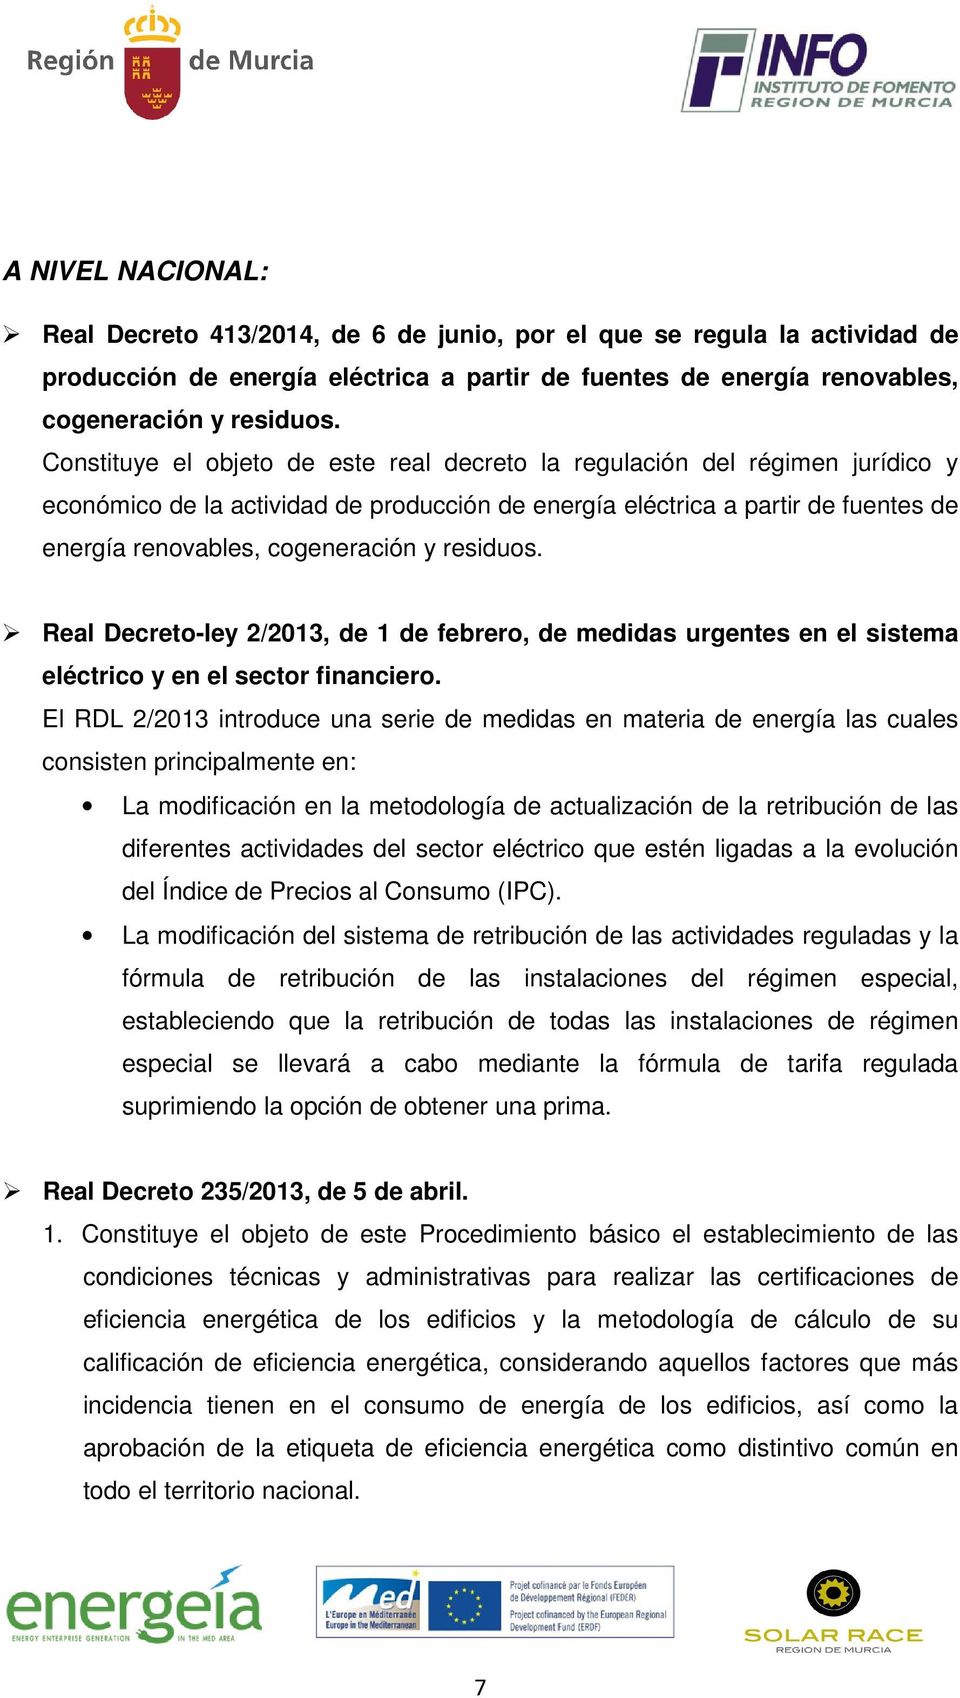 residuos. Real Decreto-ley 2/2013, de 1 de febrero, de medidas urgentes en el sistema eléctrico y en el sector financiero.